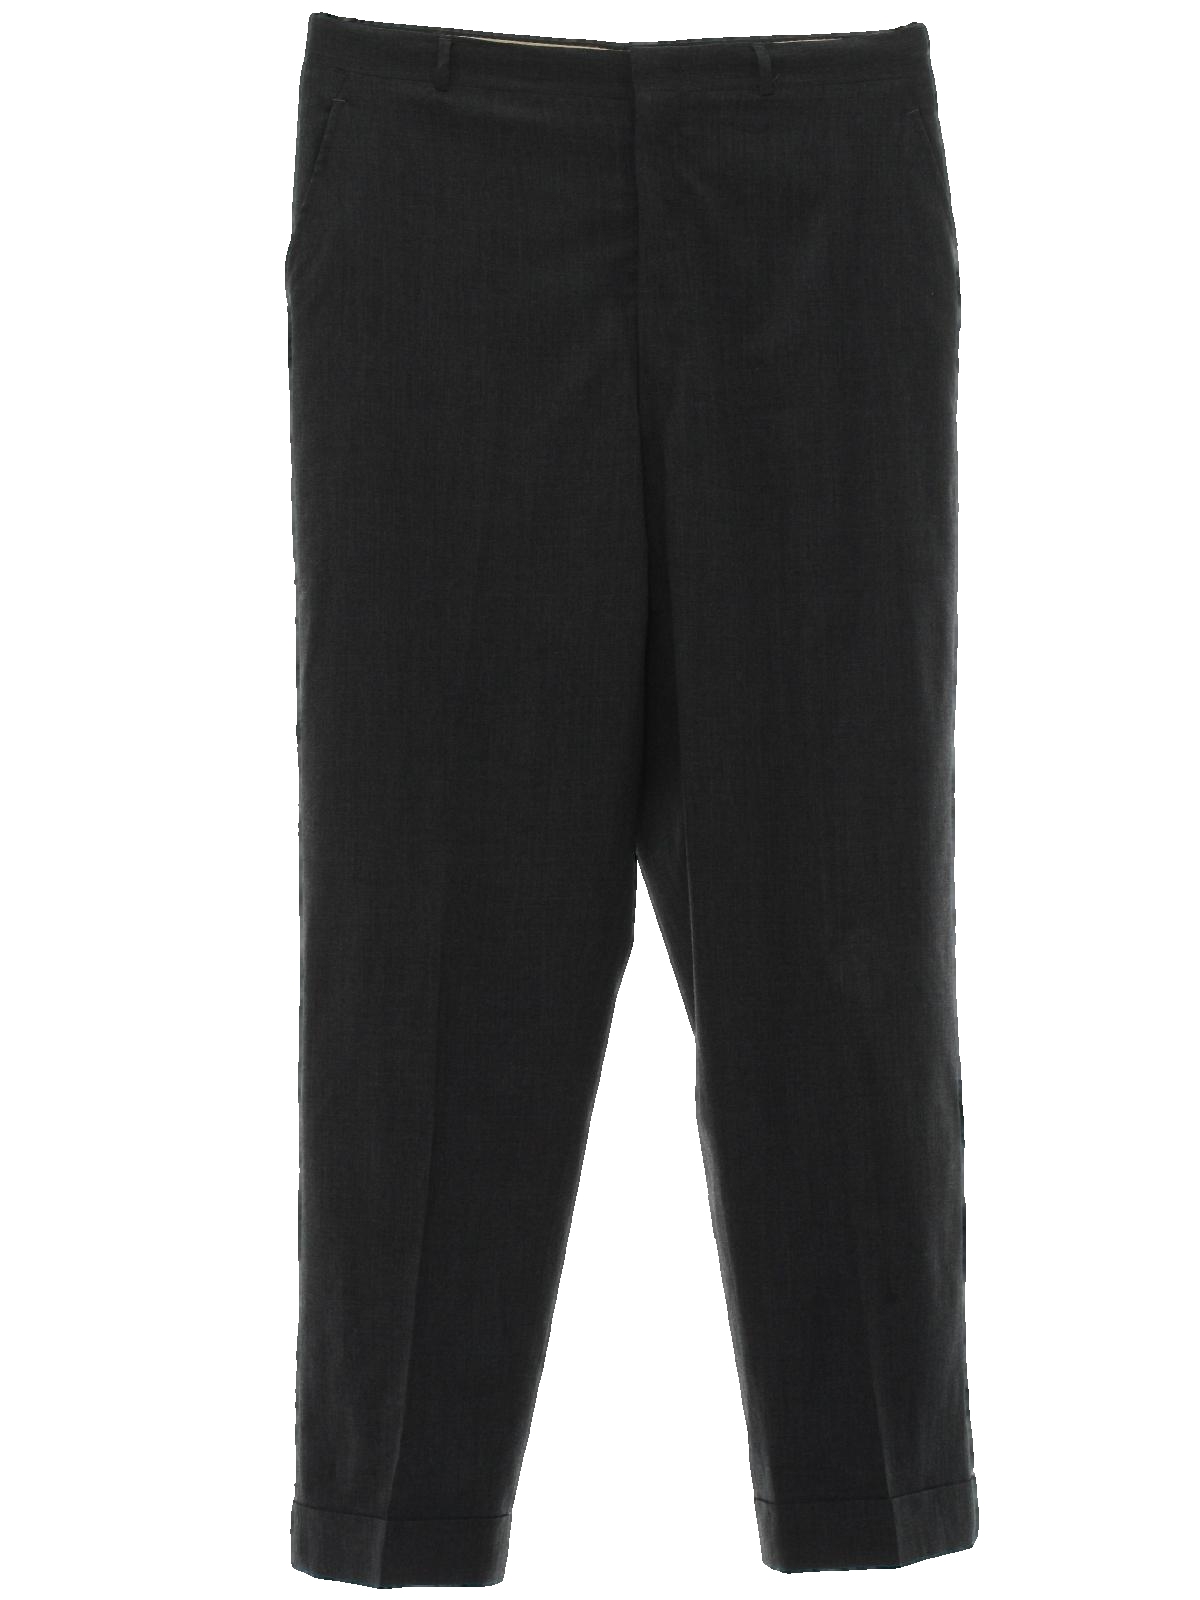 Crease Gard 60's Vintage Pants: 60s -Crease Gard- Mens charcoal gray ...